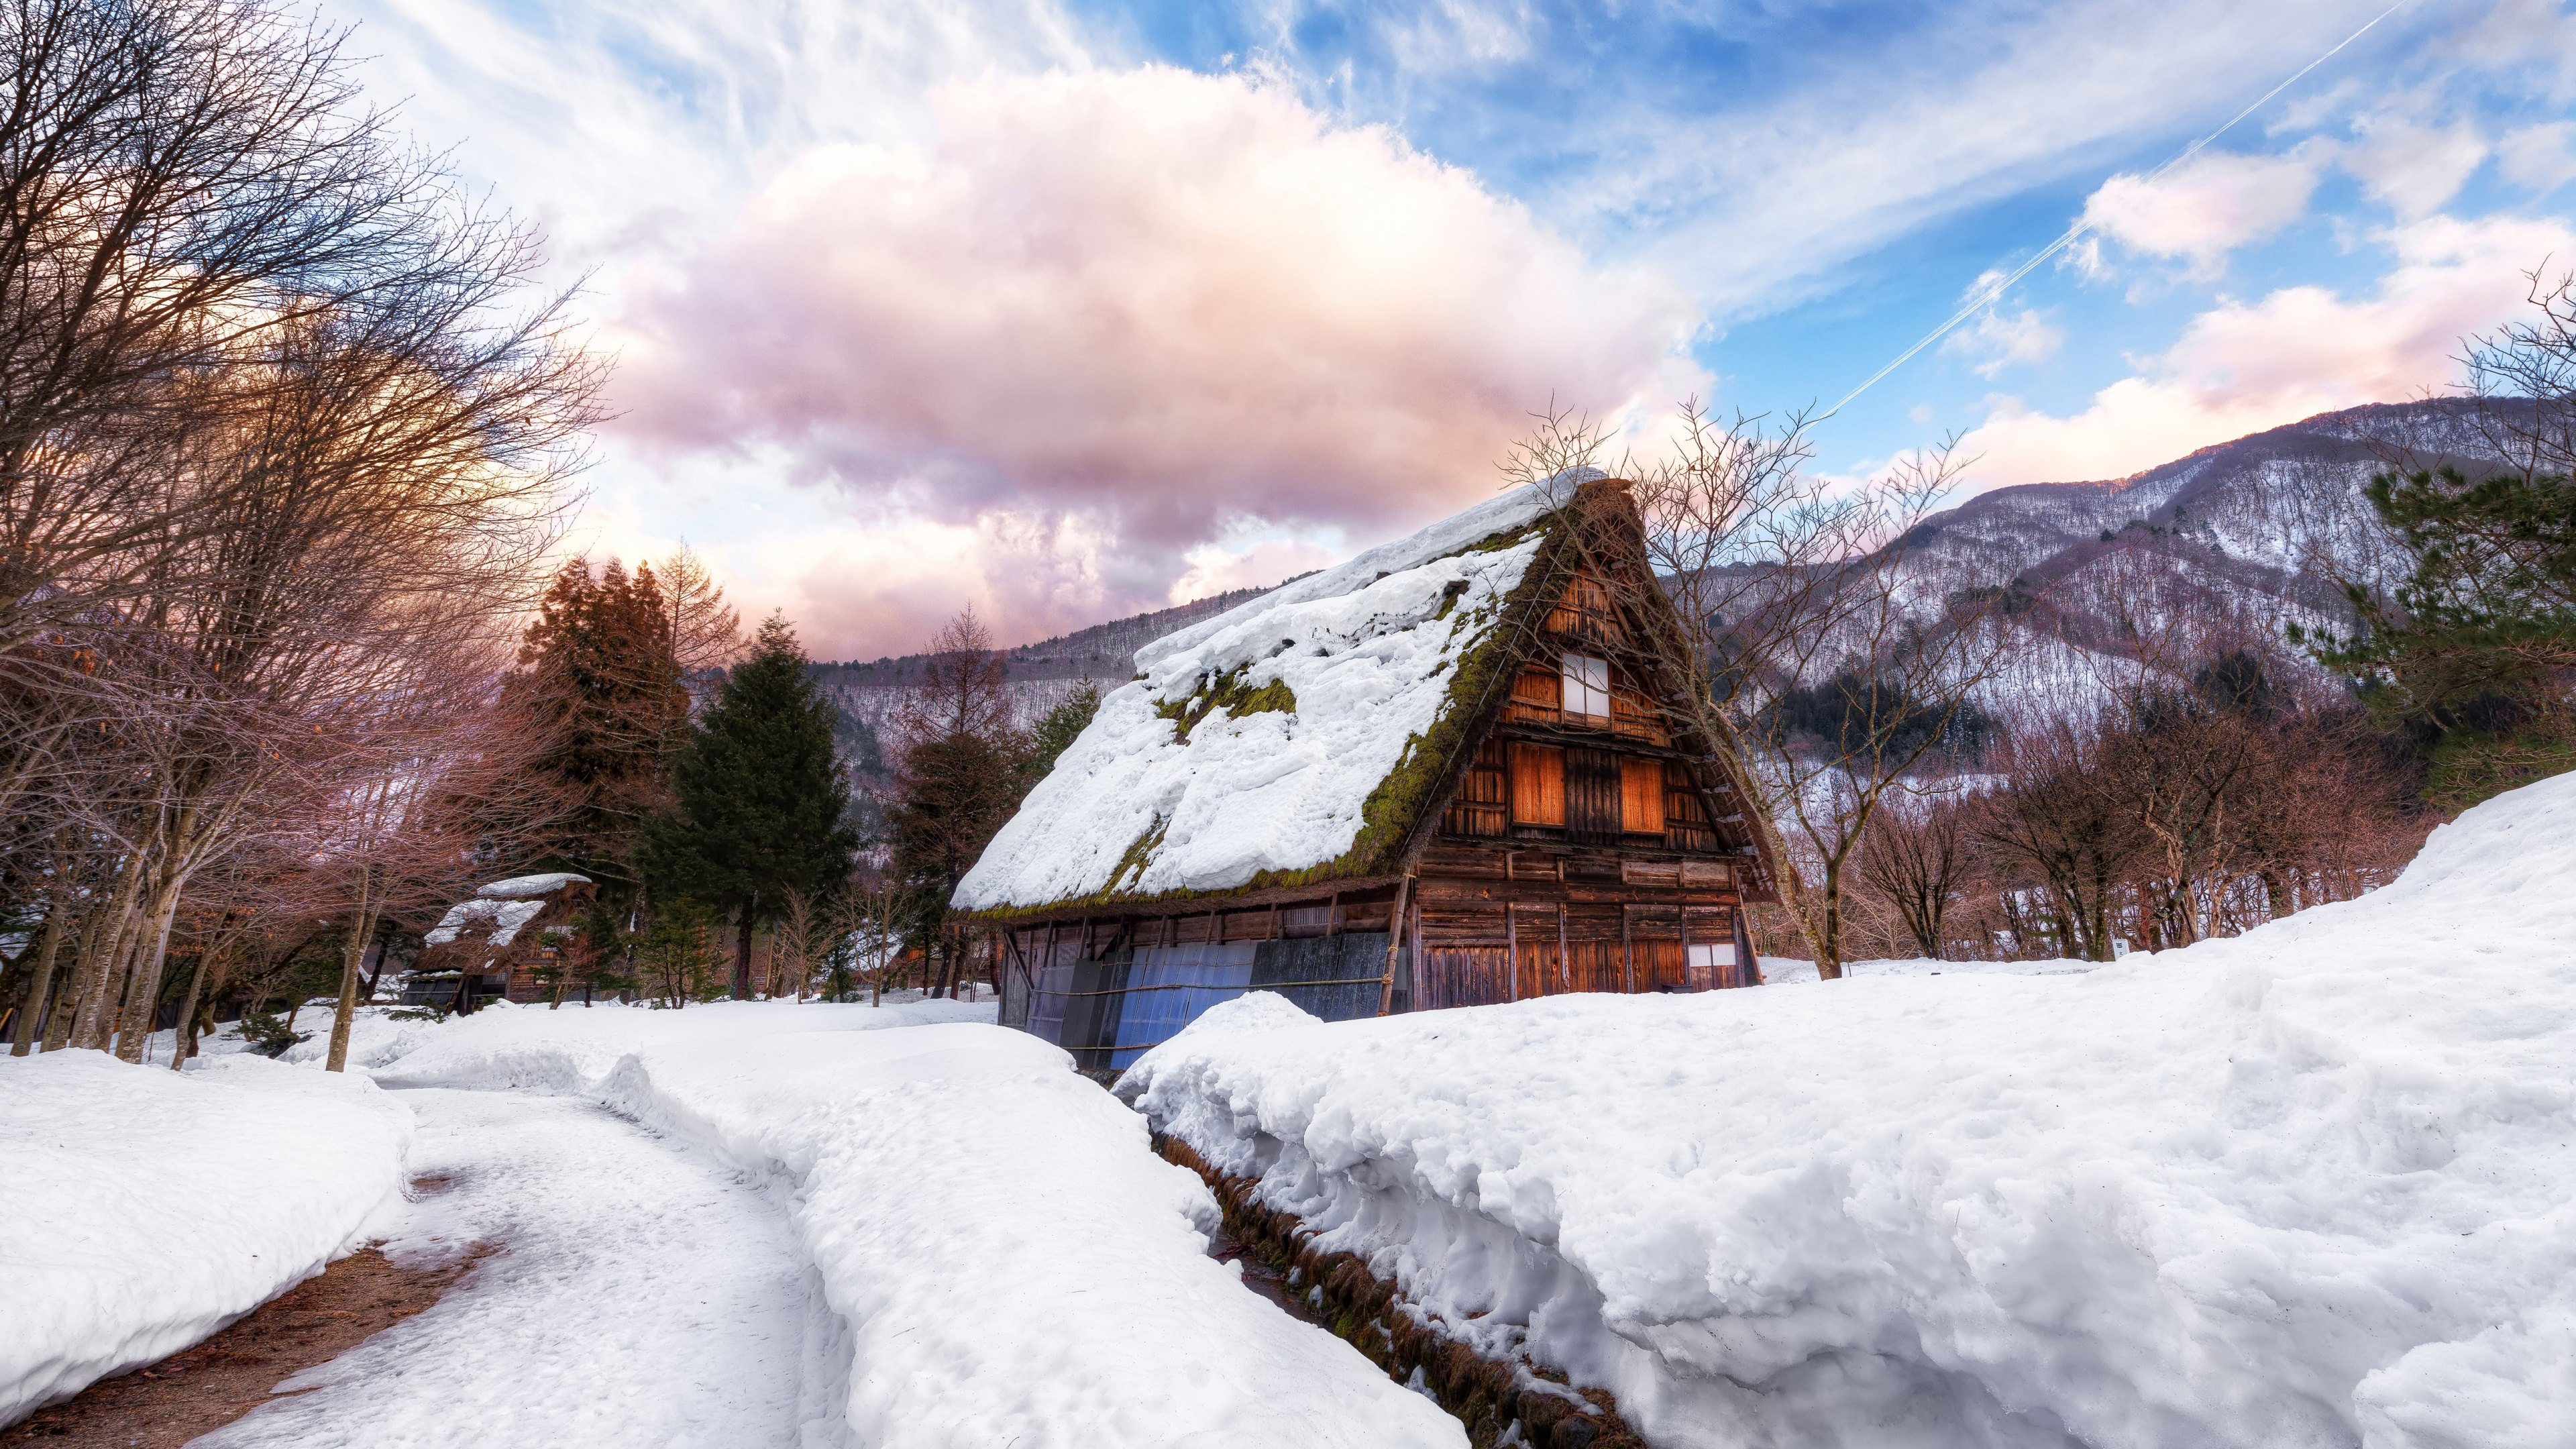 Braunes Holzhaus Auf Schneebedecktem Boden Unter Weißen Wolken Und Blauem Himmel Tagsüber. Wallpaper in 3840x2160 Resolution